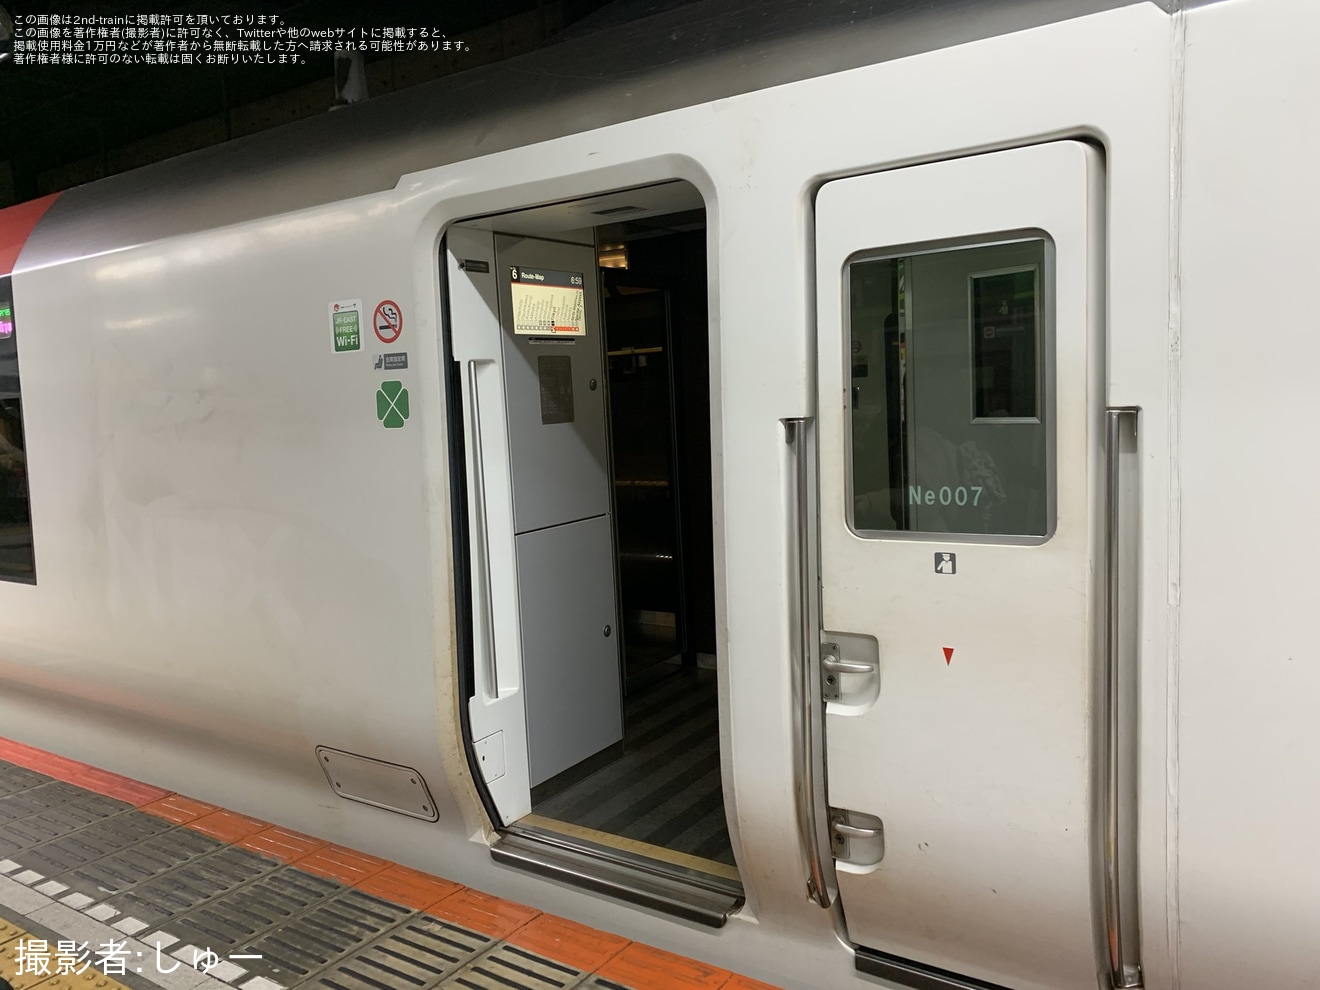 【JR東】E259系Ne007編成に存在していたNEX(成田エクスプレス)のロゴマークが剥がれた状態にの拡大写真